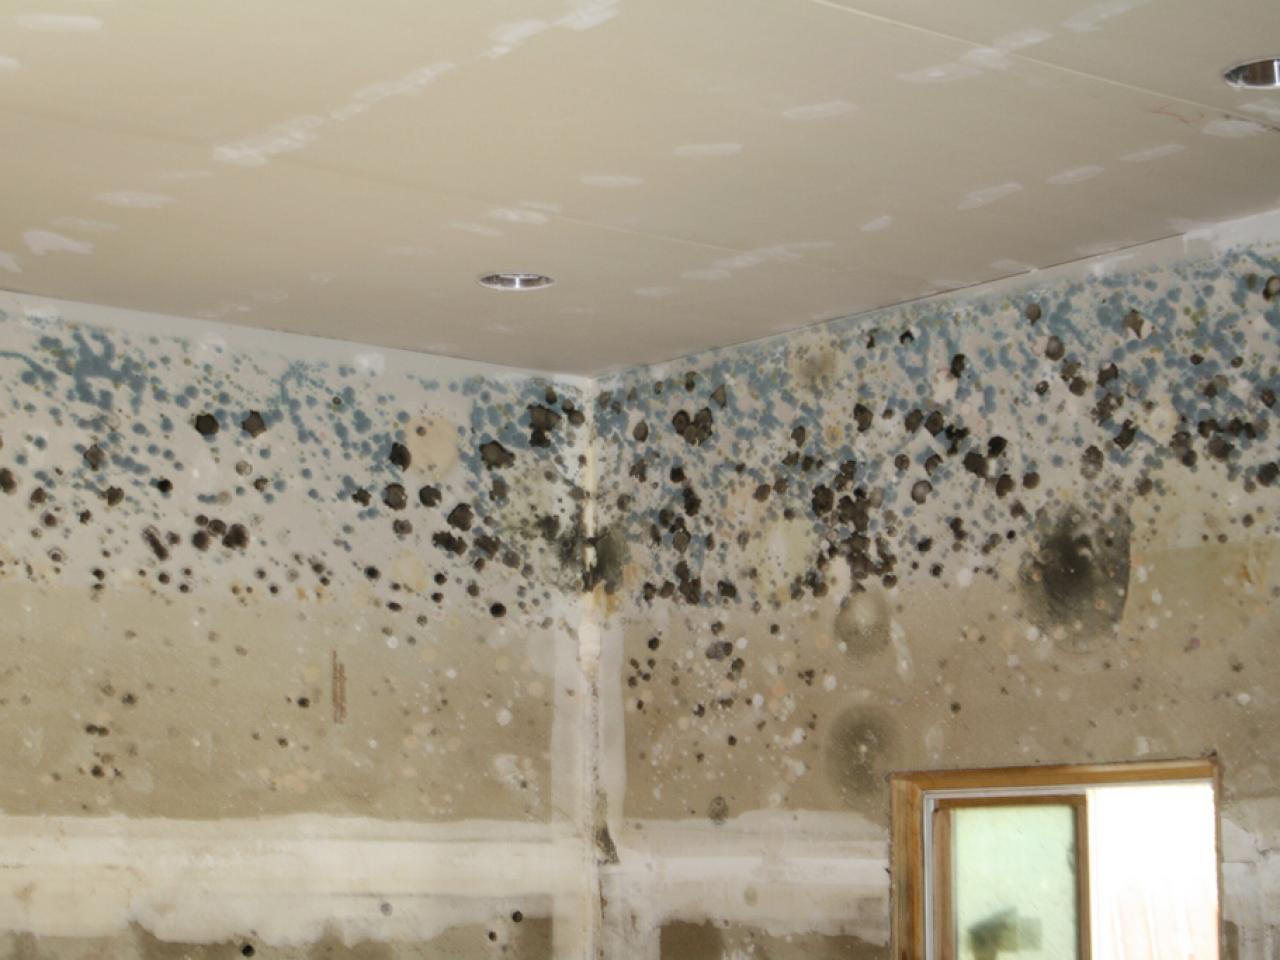 mold on the bathroom ceiling